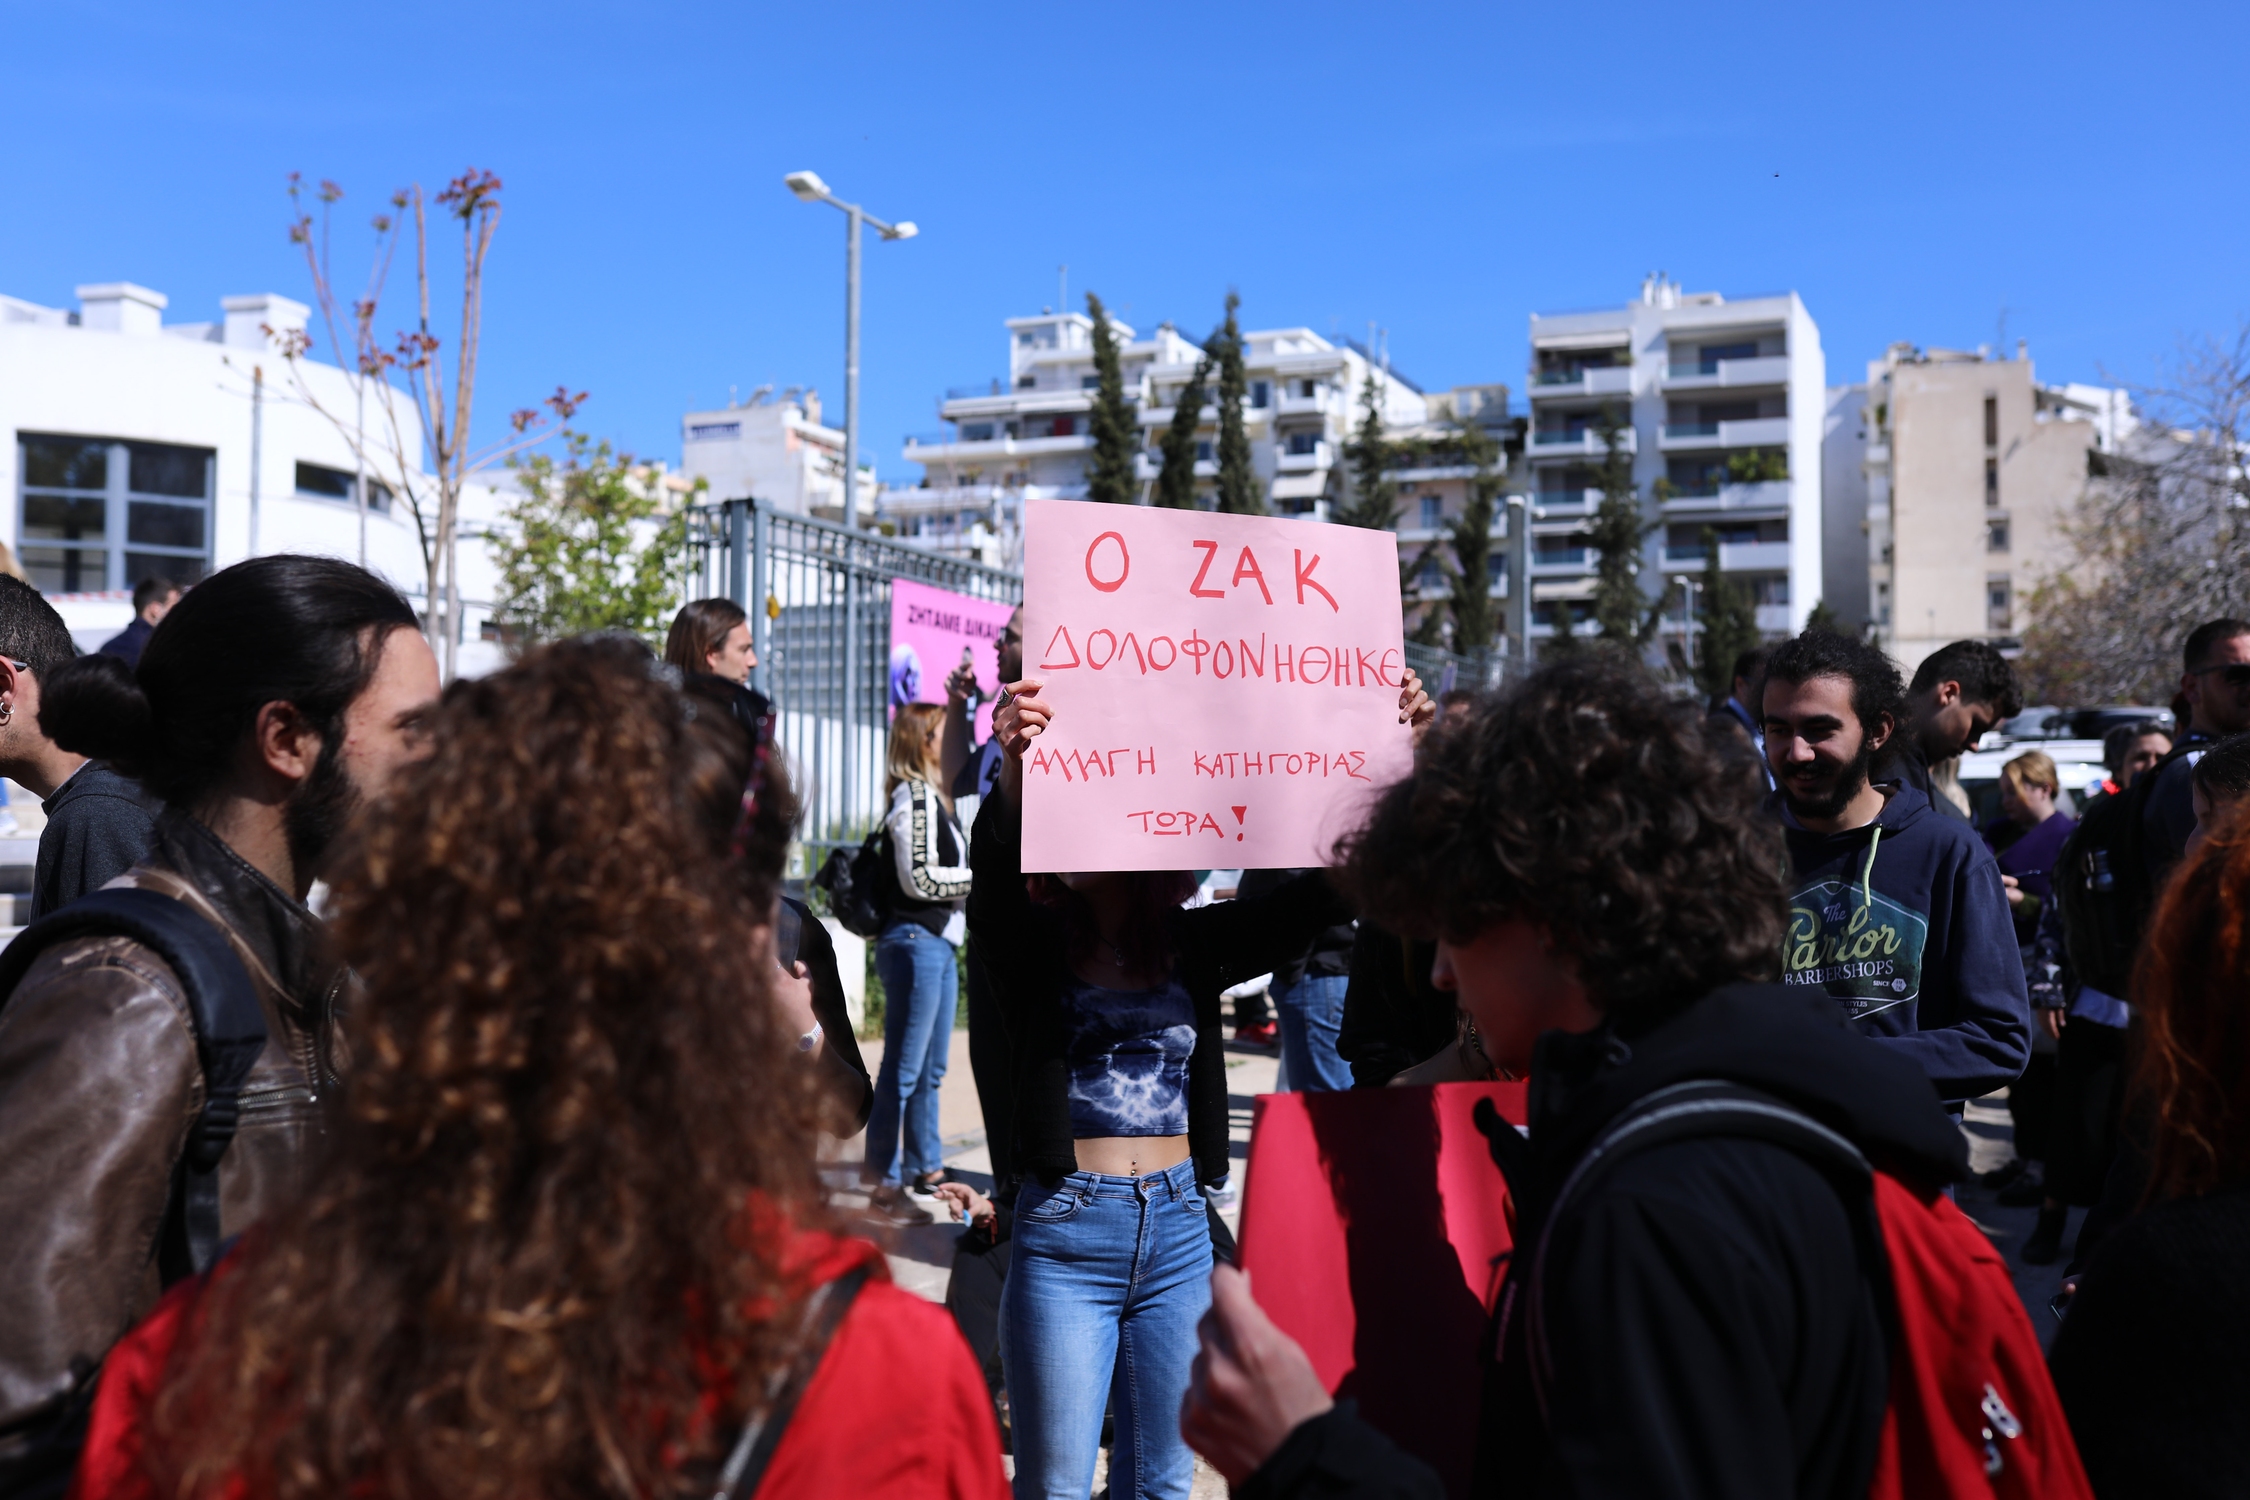 «Ο Ζακ δολοφονήθηκε. Αλλαγή κατηγορίας τώρα» γράφει το πλακάτ που κρατάει η κοπέλα στη συγκέντρωση αλληλεγγύης συλλογικοτήτων, έξω απο το πρωτοδικείο Αθηνών, κατά την έναρξη της δίκης για την δολοφονια του Ζακ Κωστόπουλου.